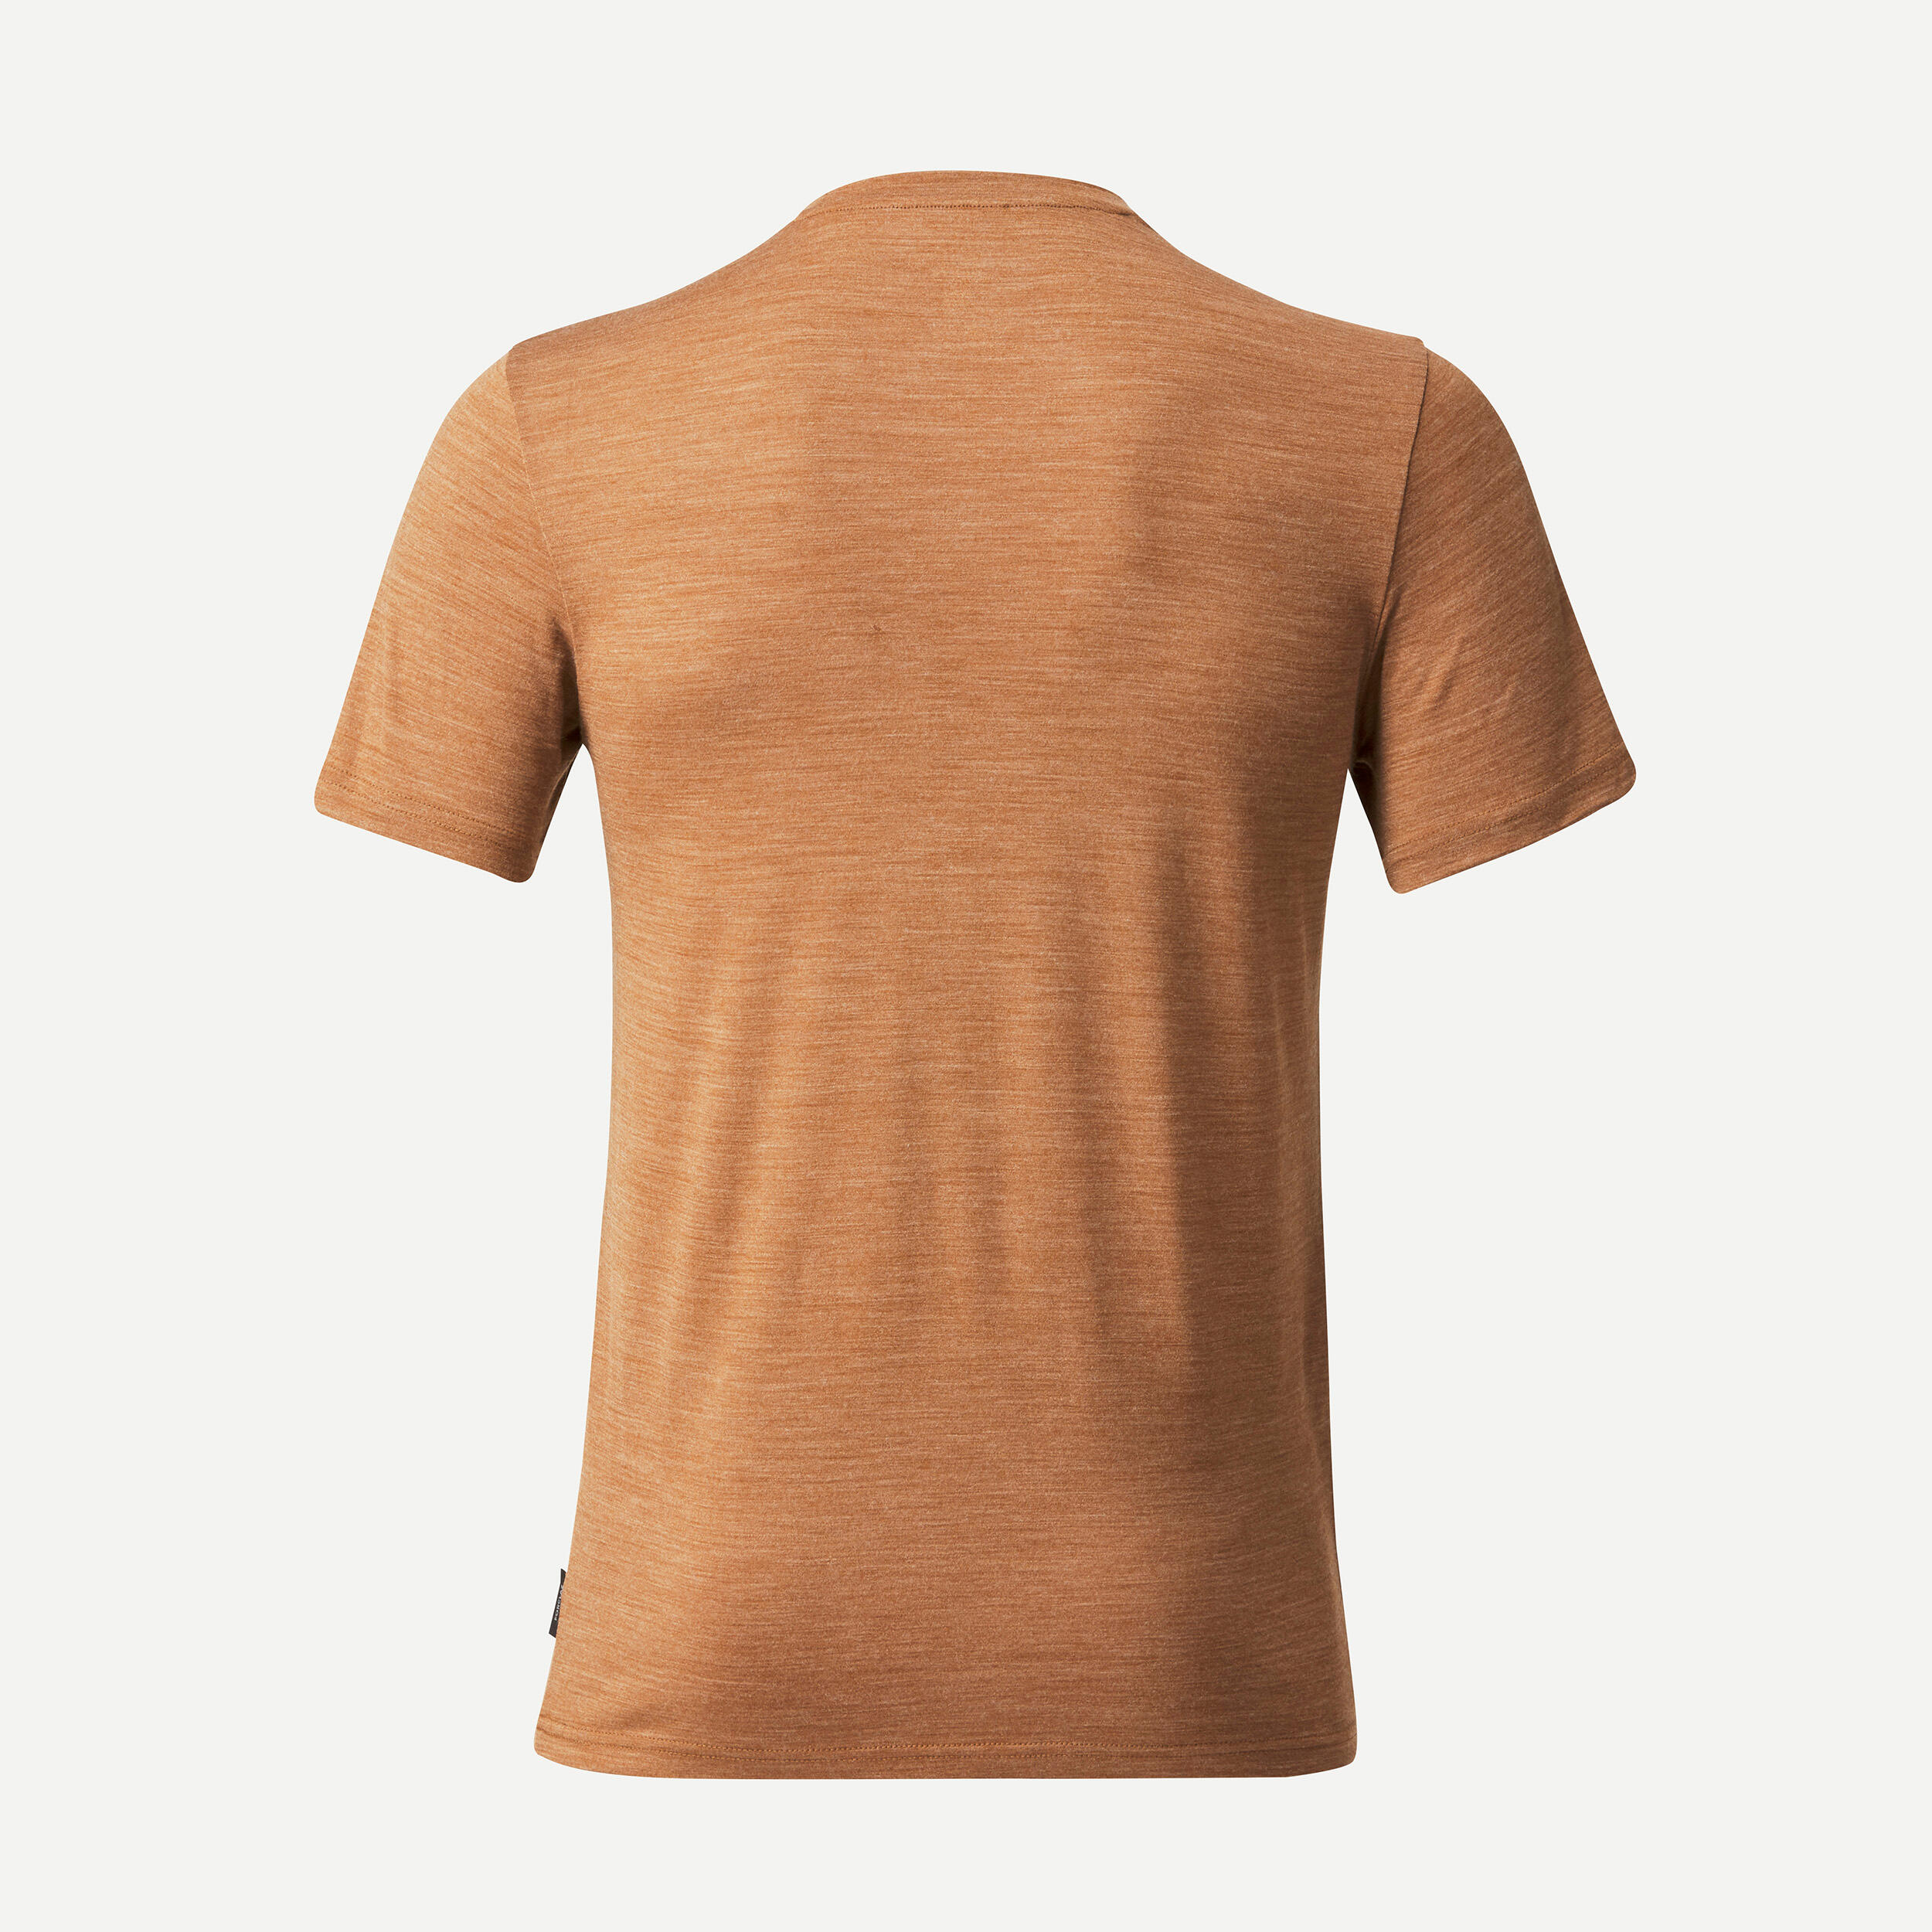 Trekking Travel Merino Wool T-Shirt - TRAVEL 100 Brown 2/6